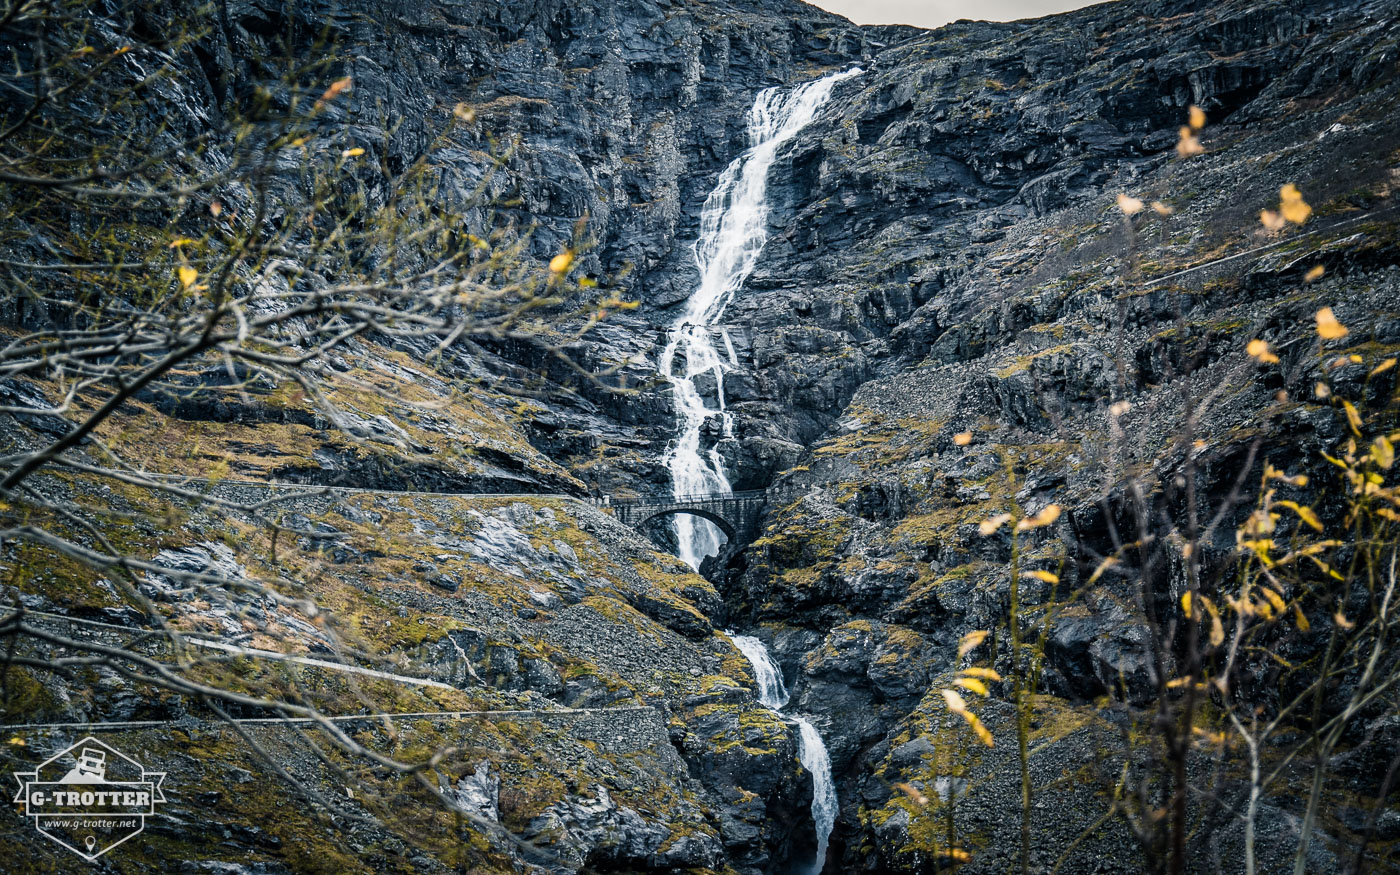 Waterfall at the Trollstigen serpentine road.